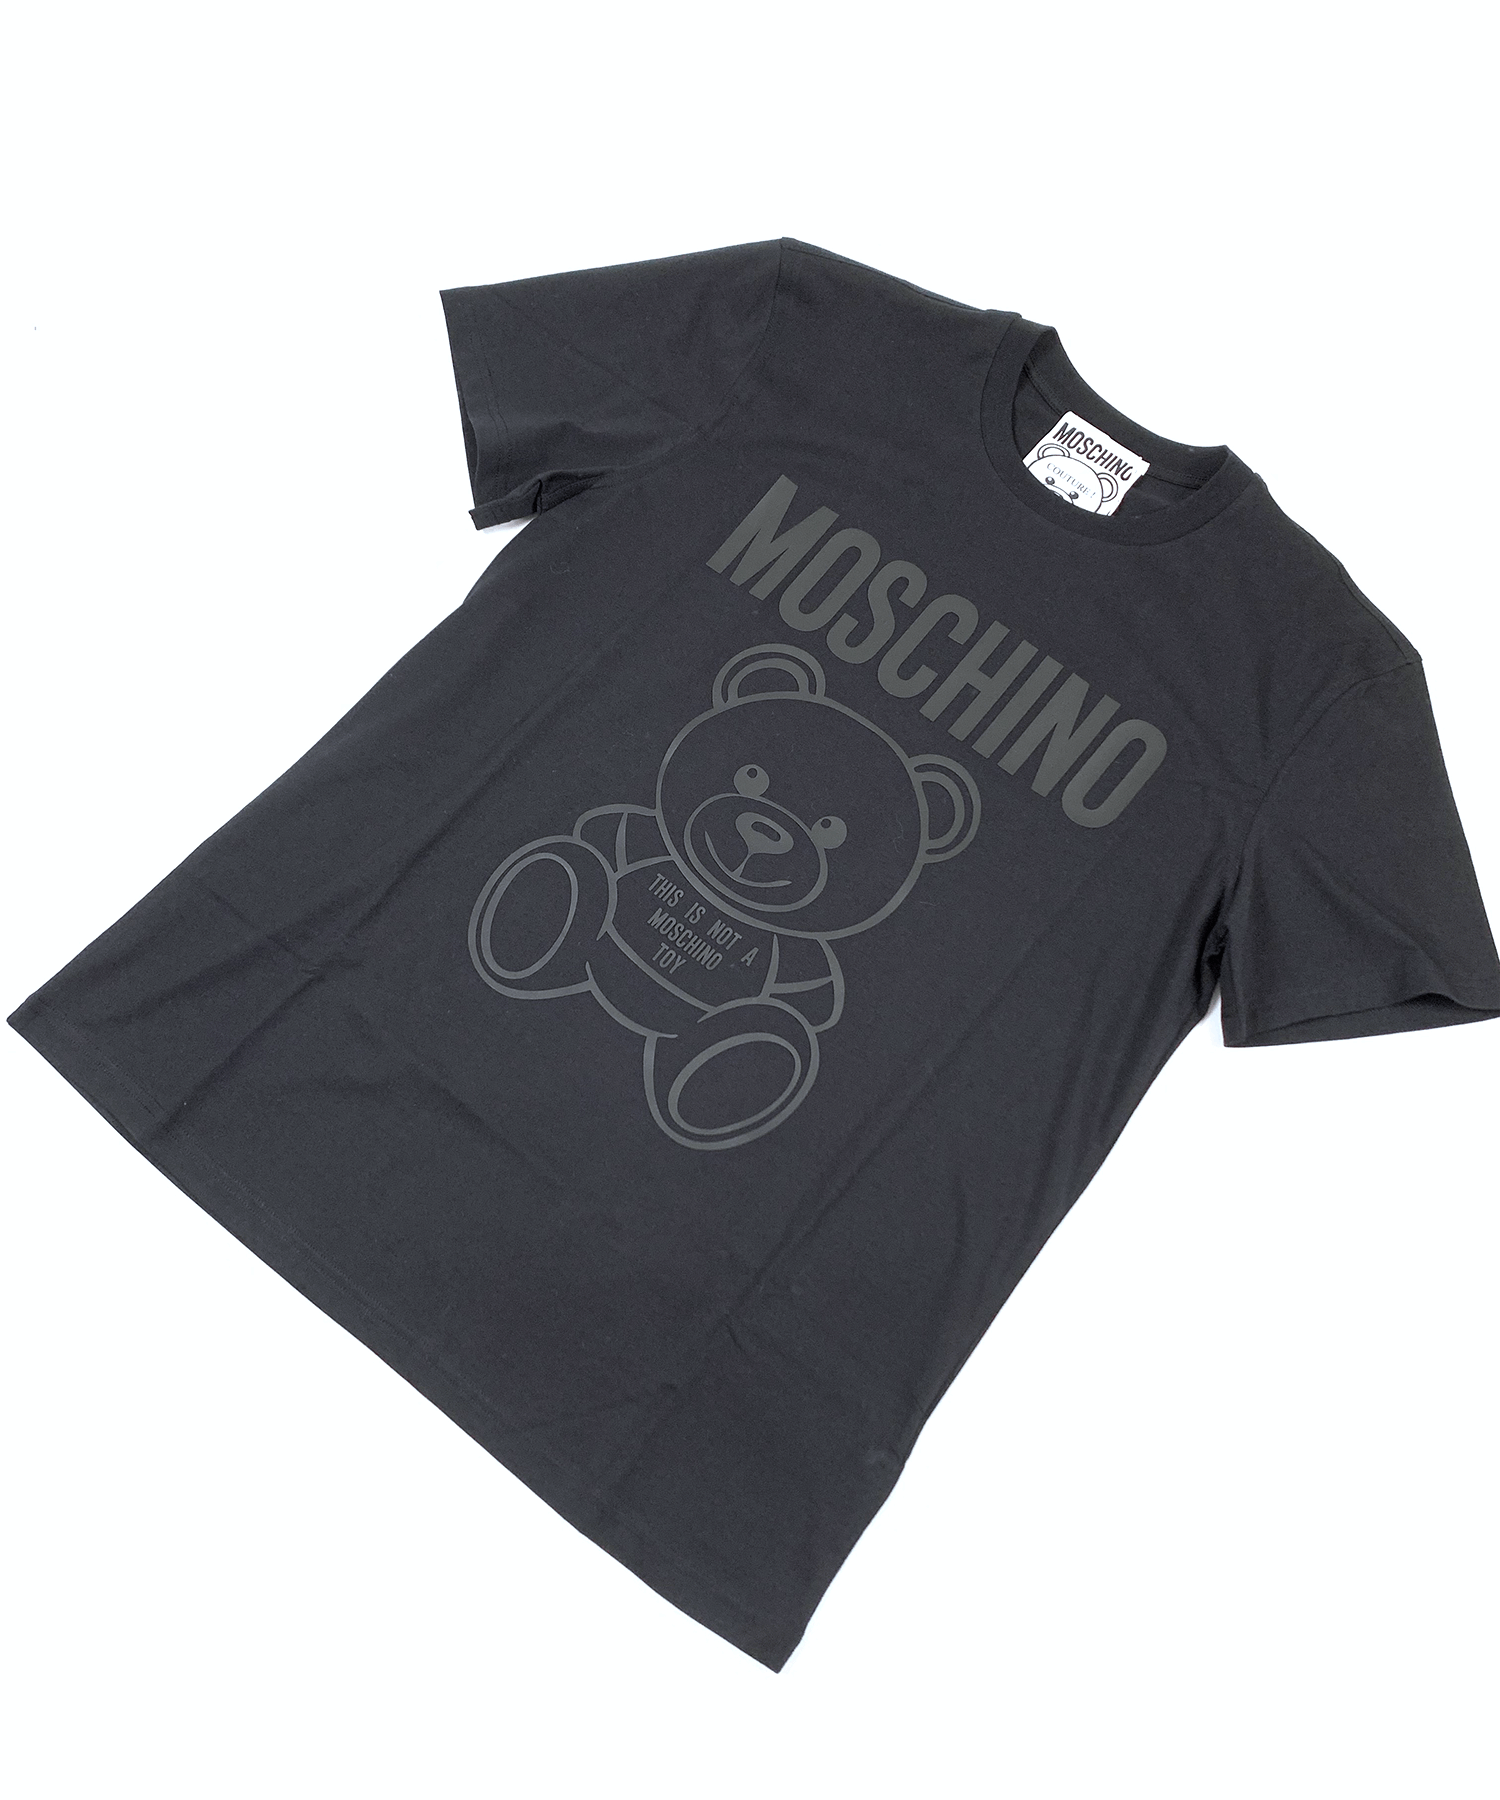 MOSCHINO  TEDDY BEAR オーガニックジャージTシャツ(ブラック)